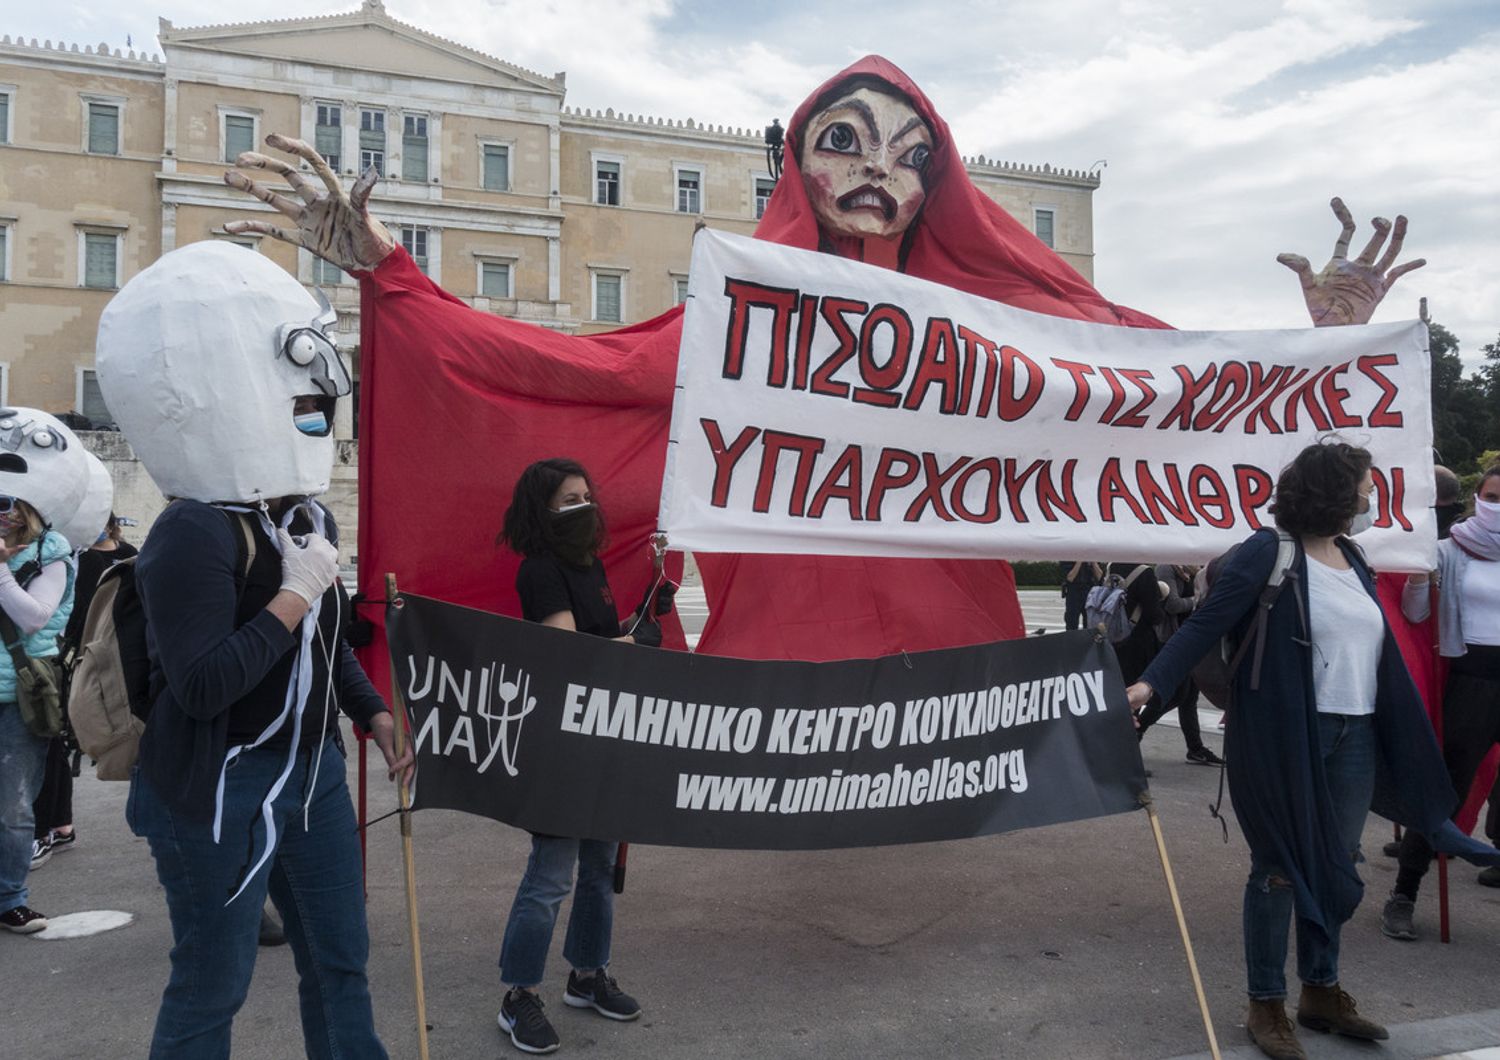 Una manifestazione in Grecia per dare sostegno ai lavoratori dello spettacolo durante la crisi